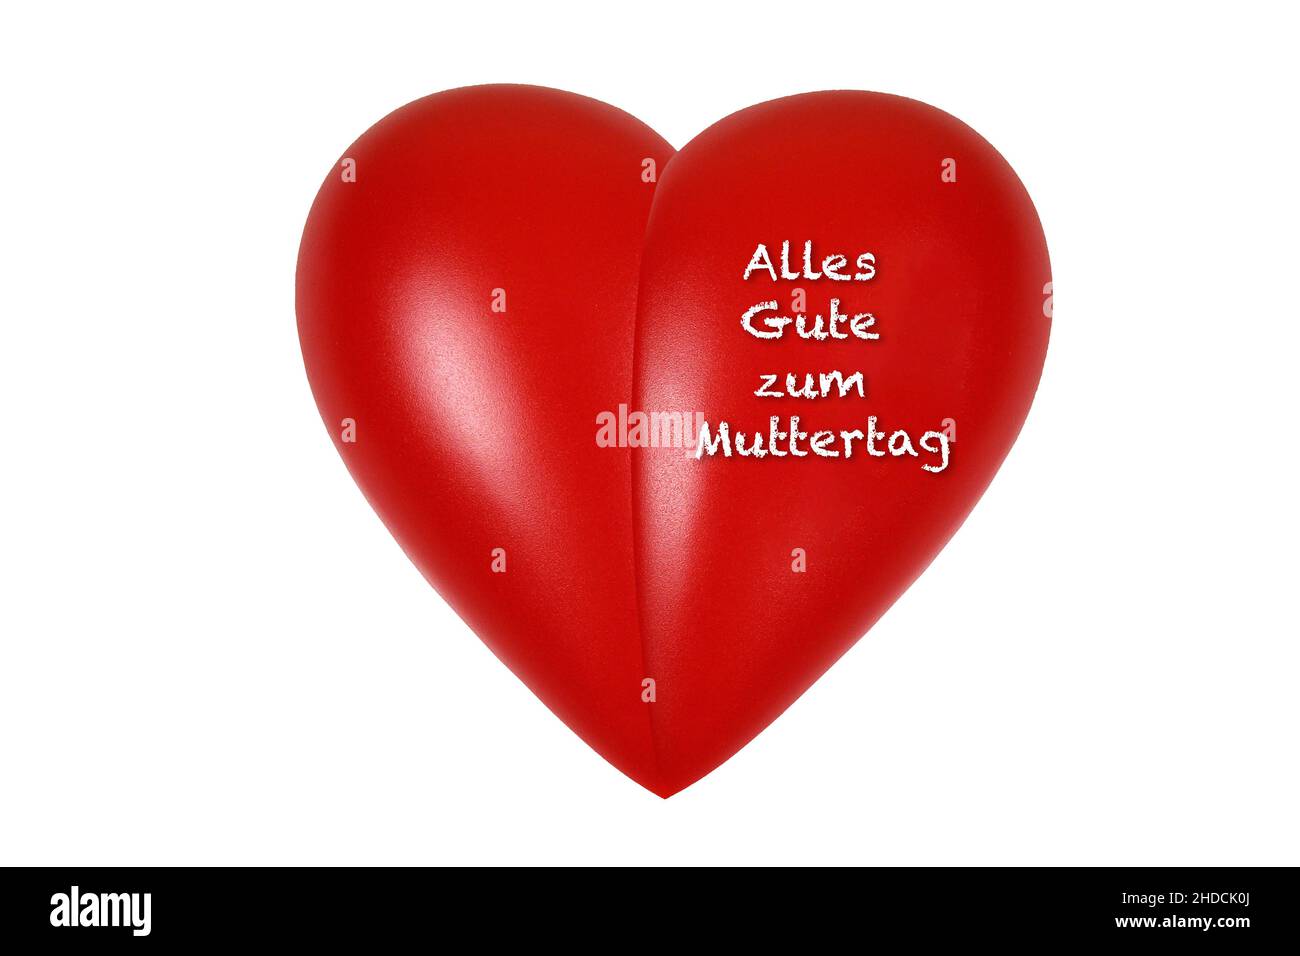 Rotes Herz, Organ, Gesundheit, Körperteil, Alles Gute zum Muttertag, Stock Photo